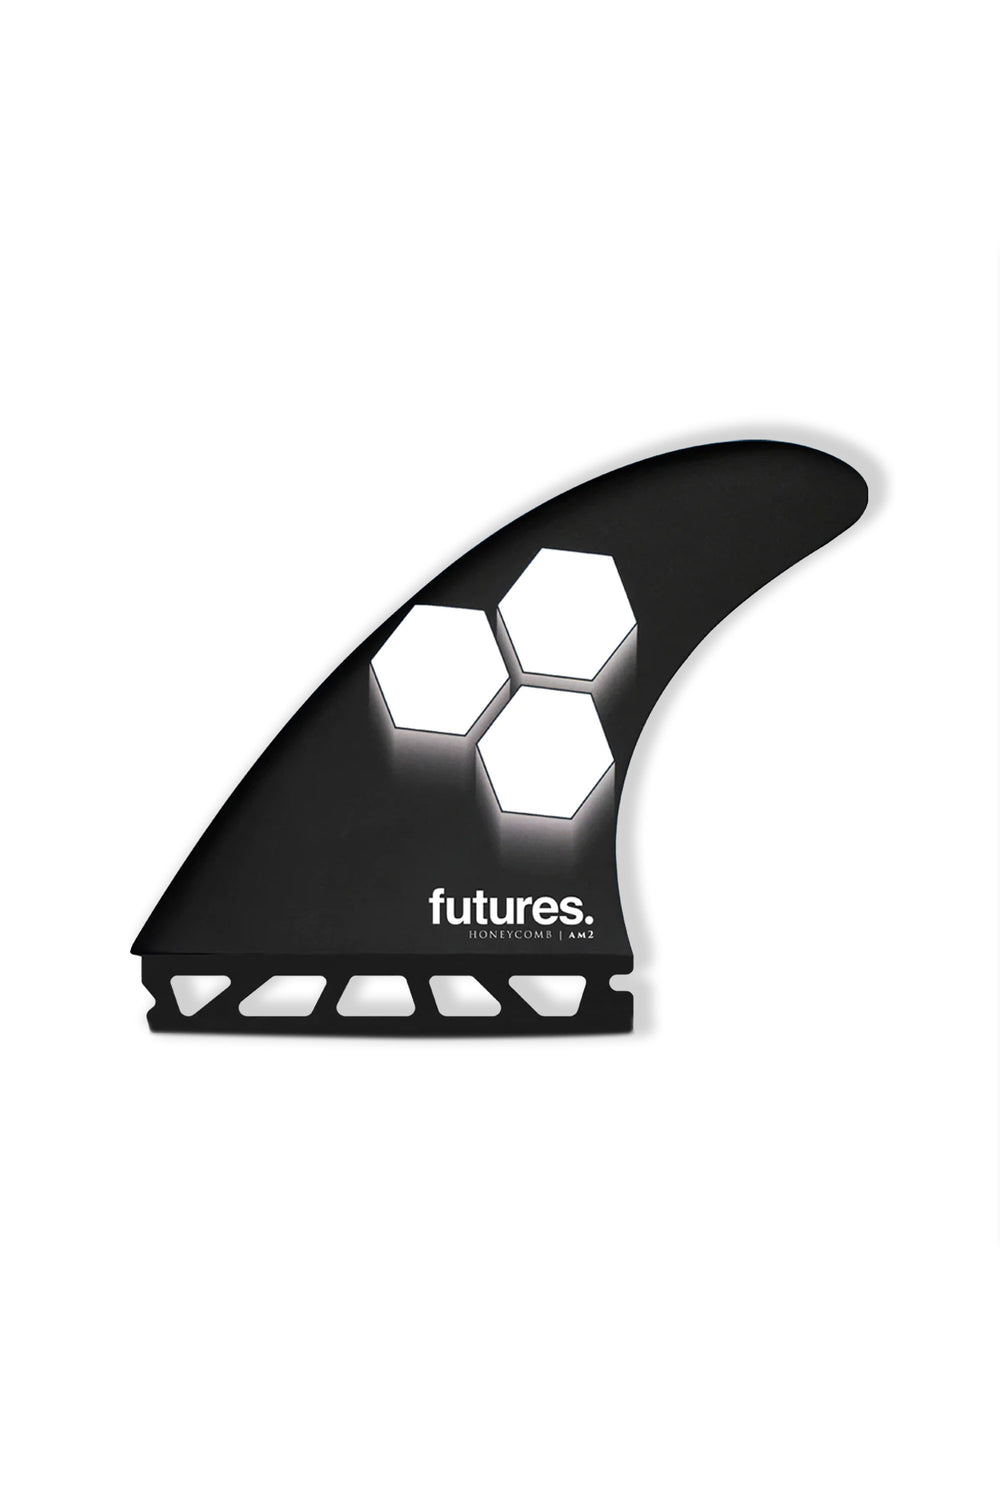 Pukas-Surf-Shop-futures-Fins-AM2-honeycomb-black-white